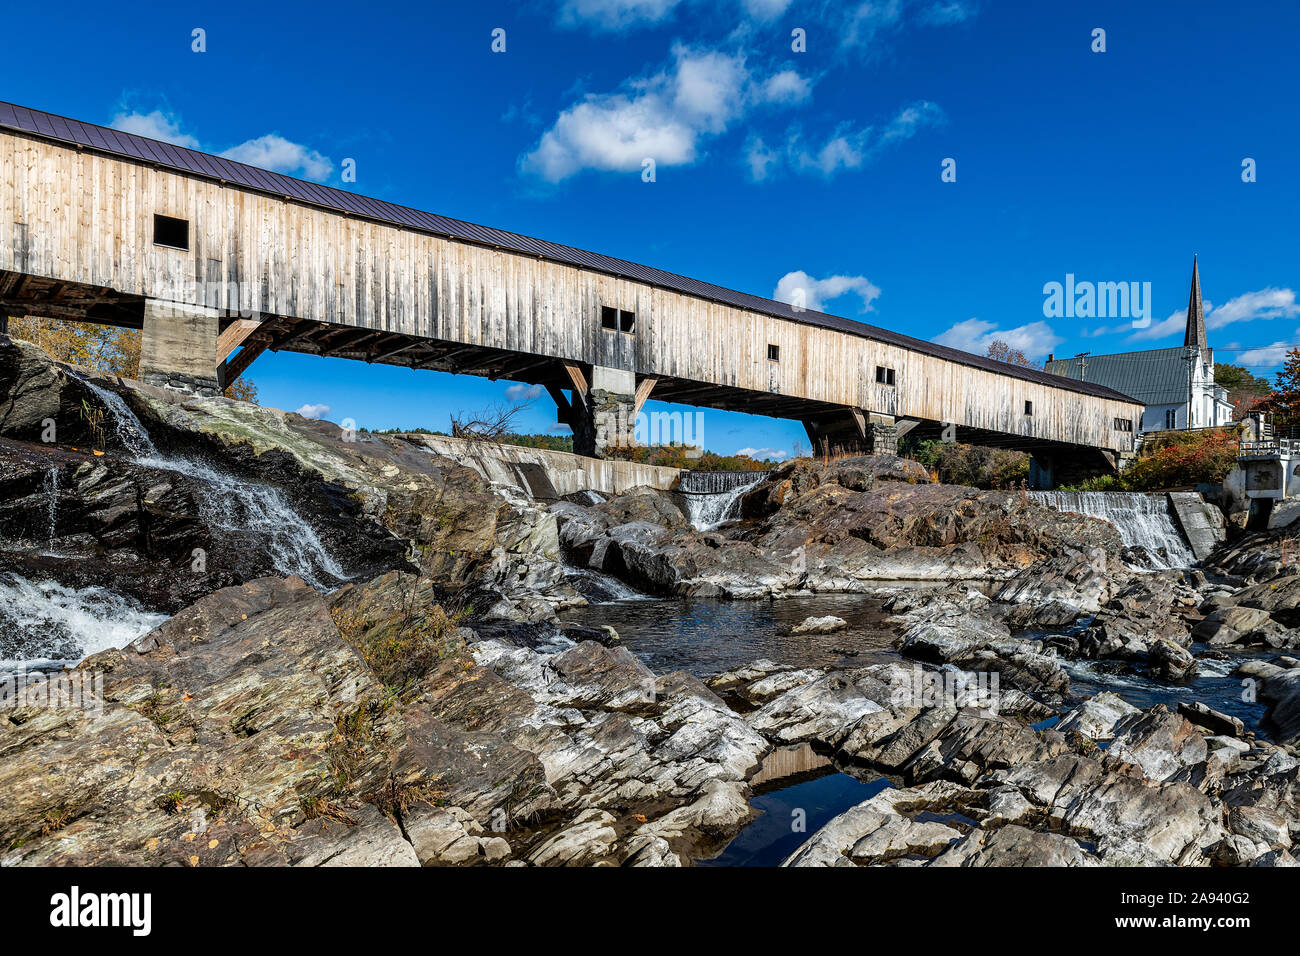 Badewanne überdachte Brücke, Badewanne, New Hampshire, USA. Stockfoto